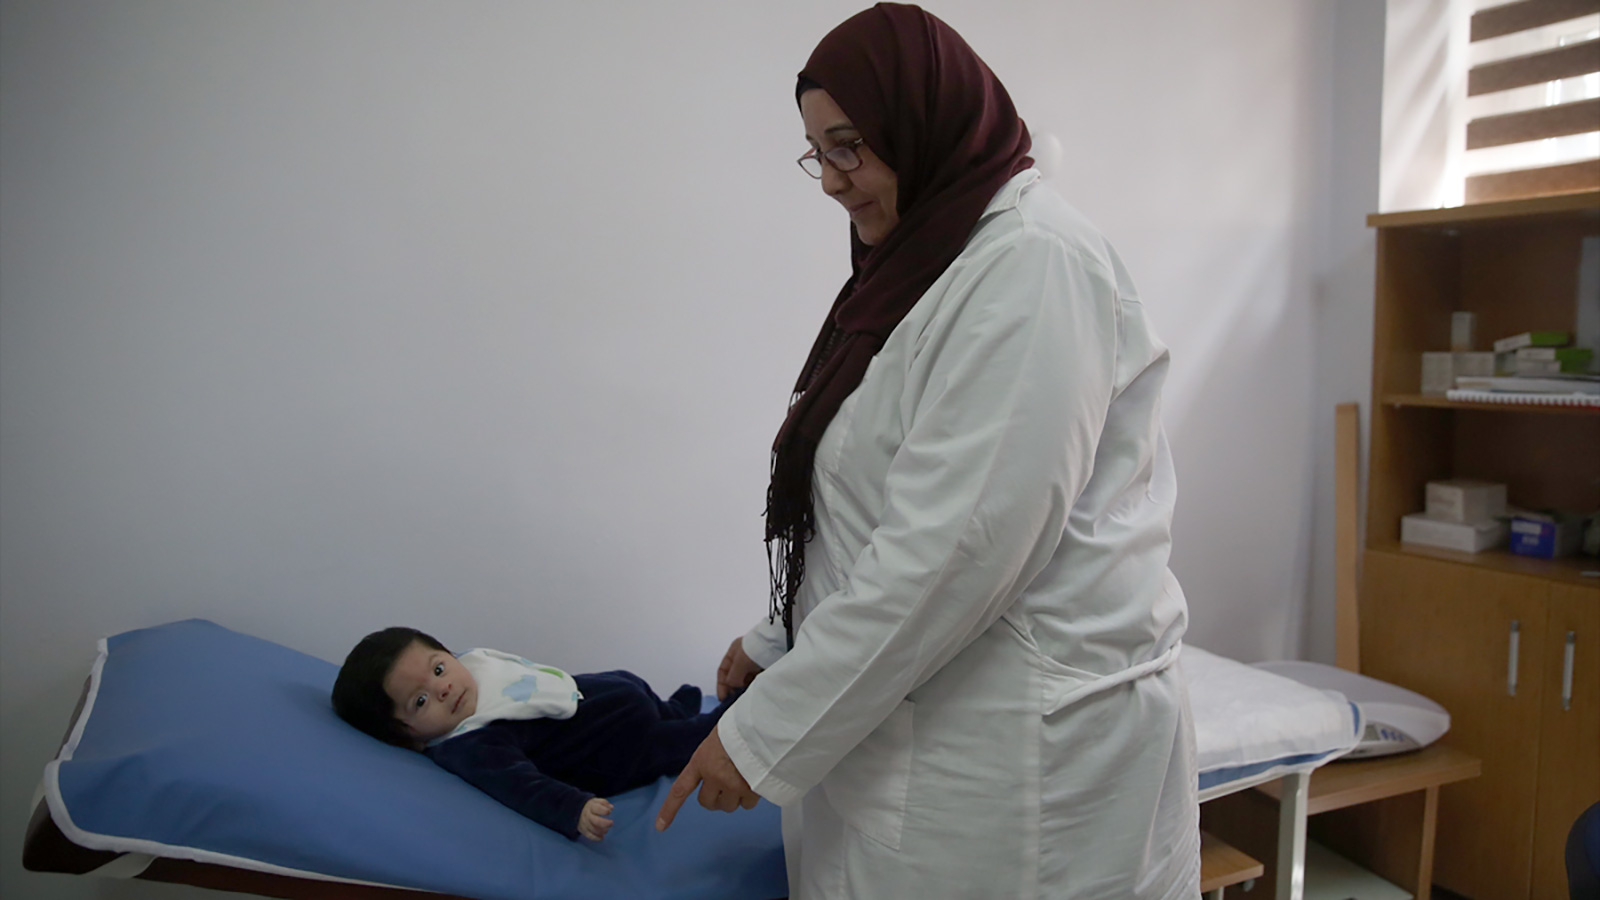 الطبيبة ولادة شماس تعمل في مركز صحي للاجئين (الأناضول)